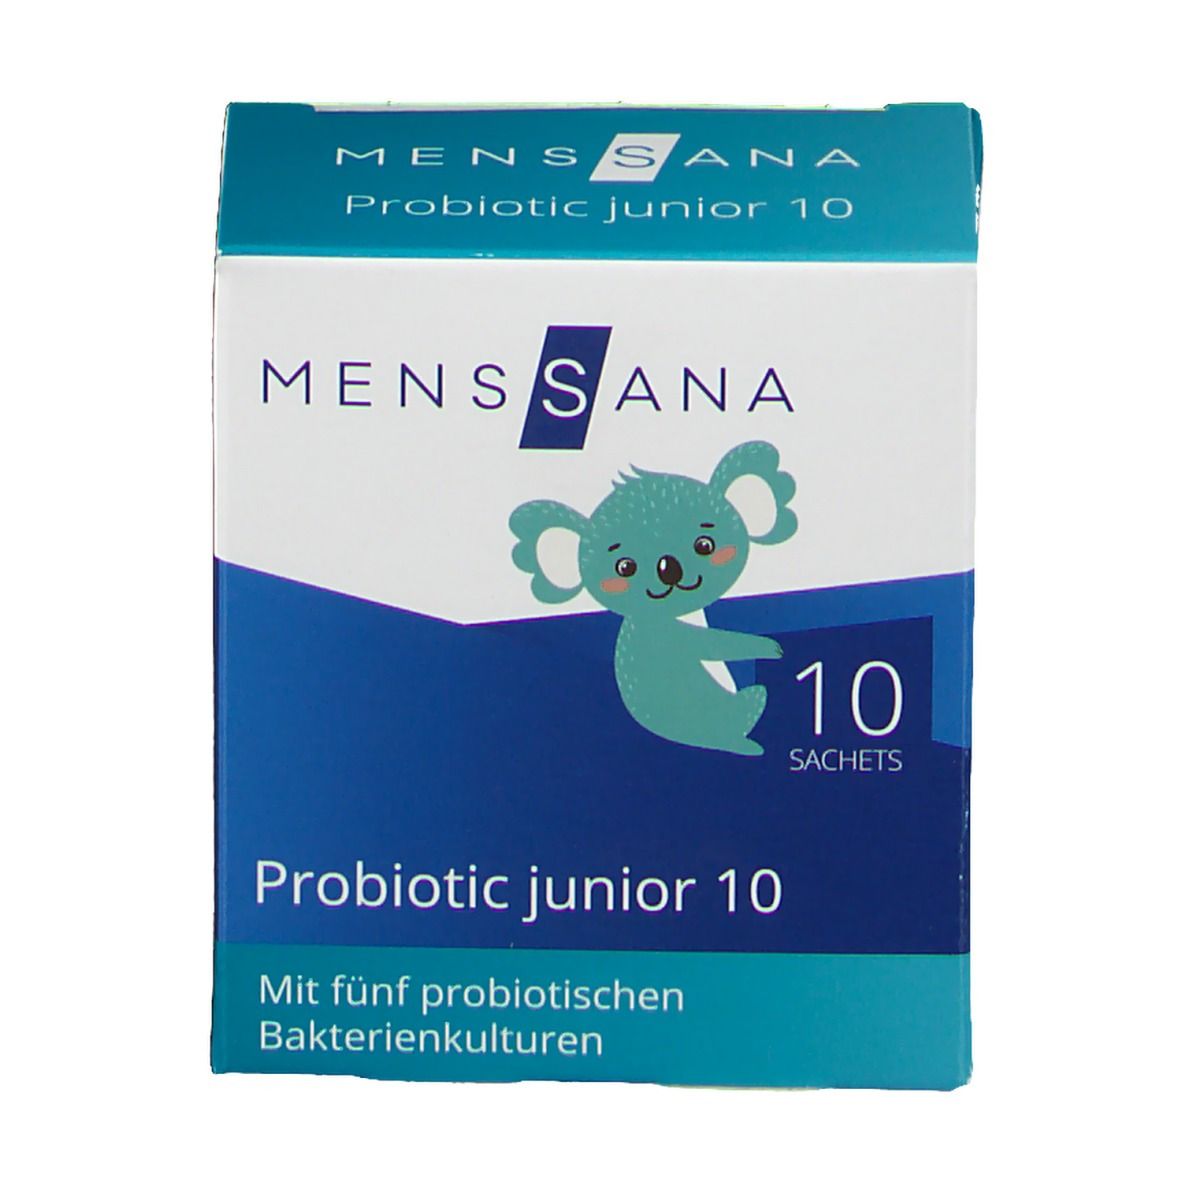 MensSana Probiotic junior